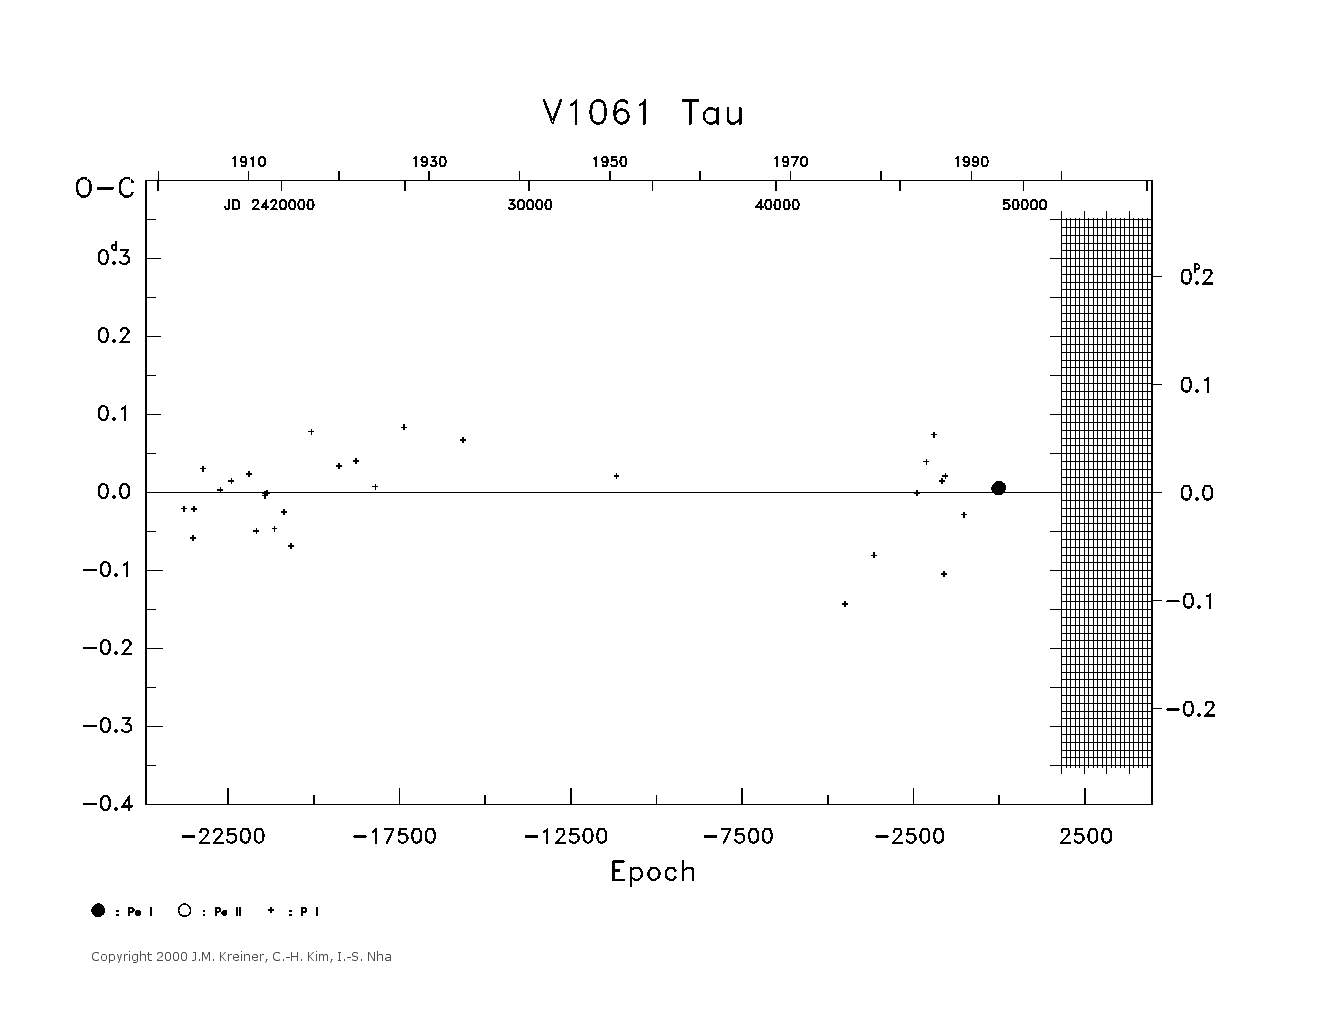 [IMAGE: large V1061 TAU O-C diagram]